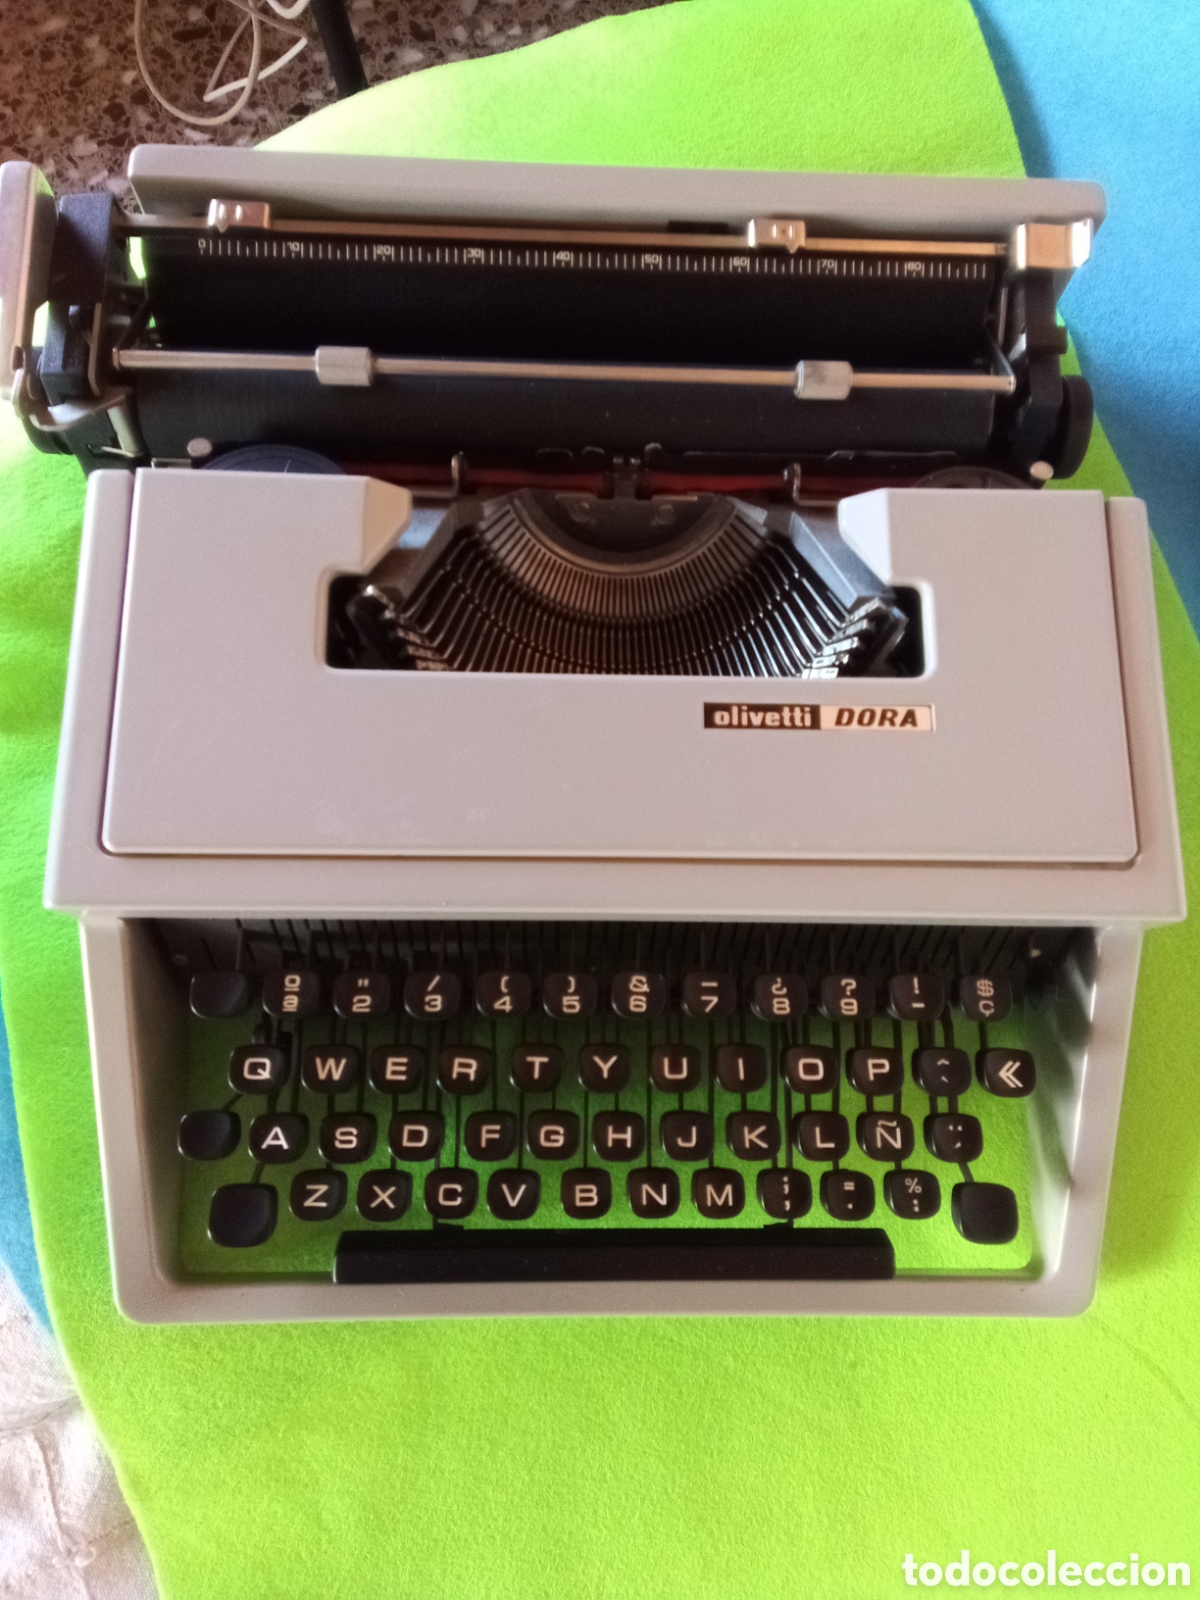 maquina de escribir olivetti dora - Compra venta en todocoleccion